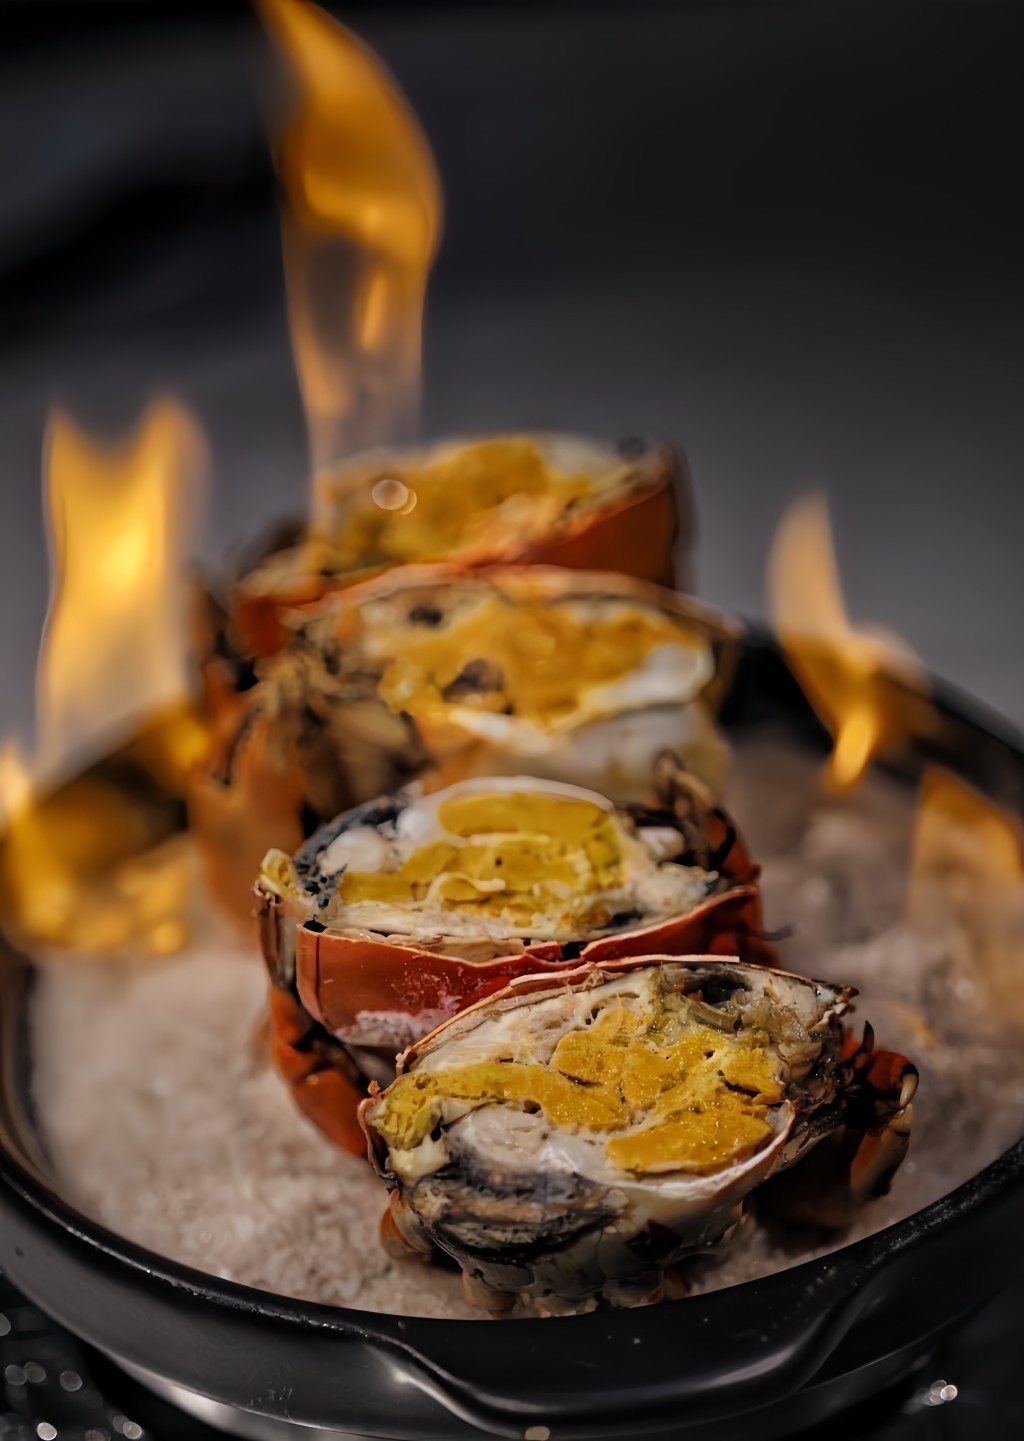 火燄奄仔蟹（2人套餐），每隻至少10両重的頂級奄仔蟹以油鹽烹製後，加入特調的酒及點火，燒出鮮蟹的甜味。